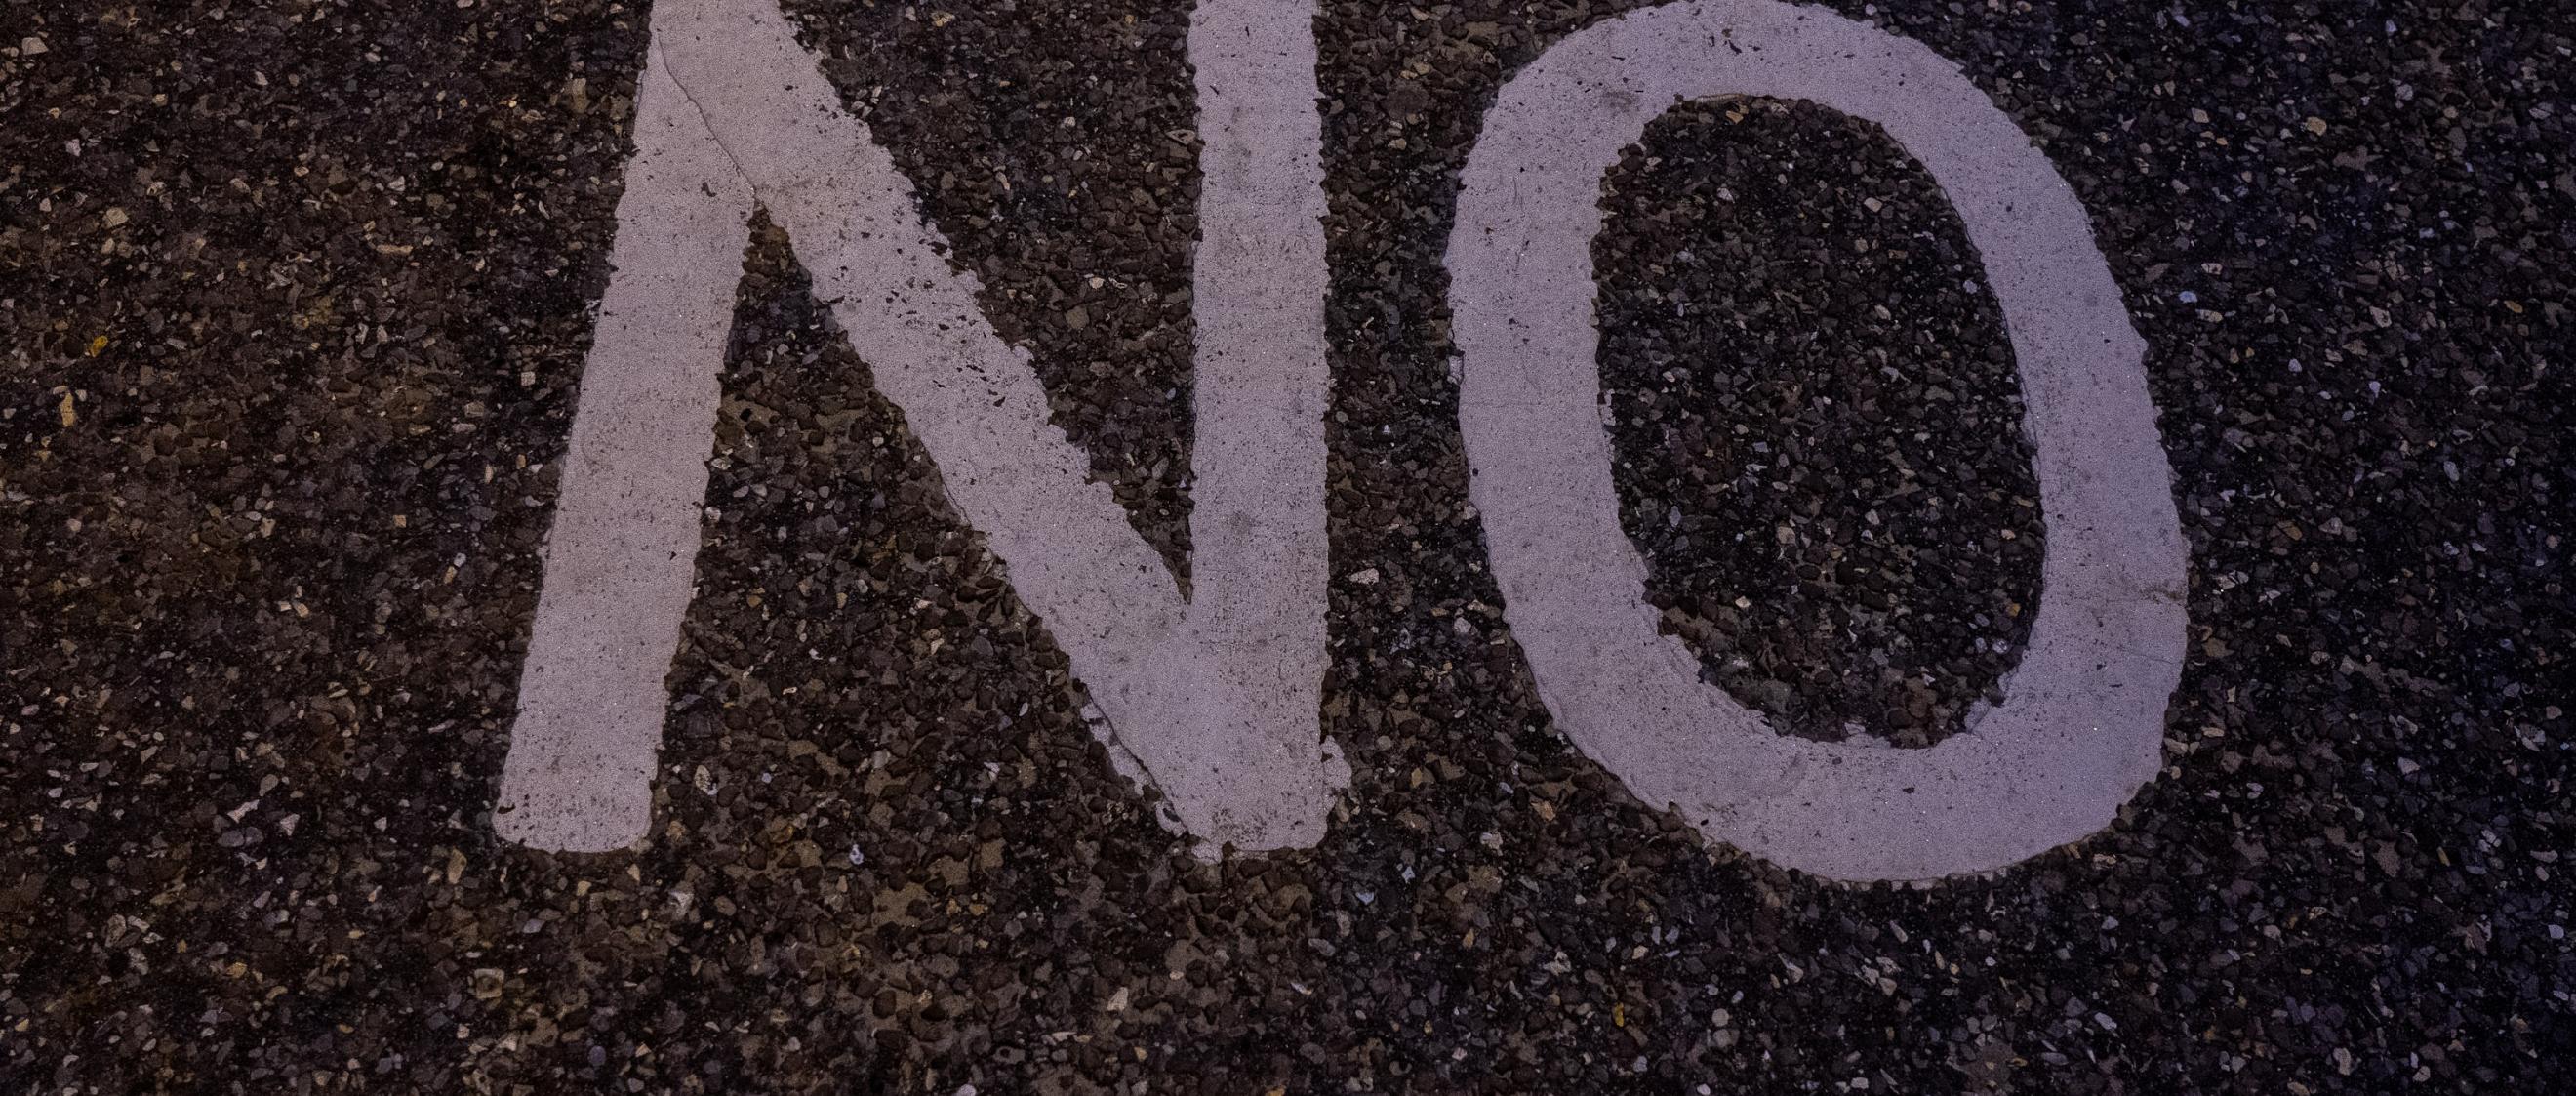 Auf einer Straße ist No, das englische Wort für nein aufgemalt